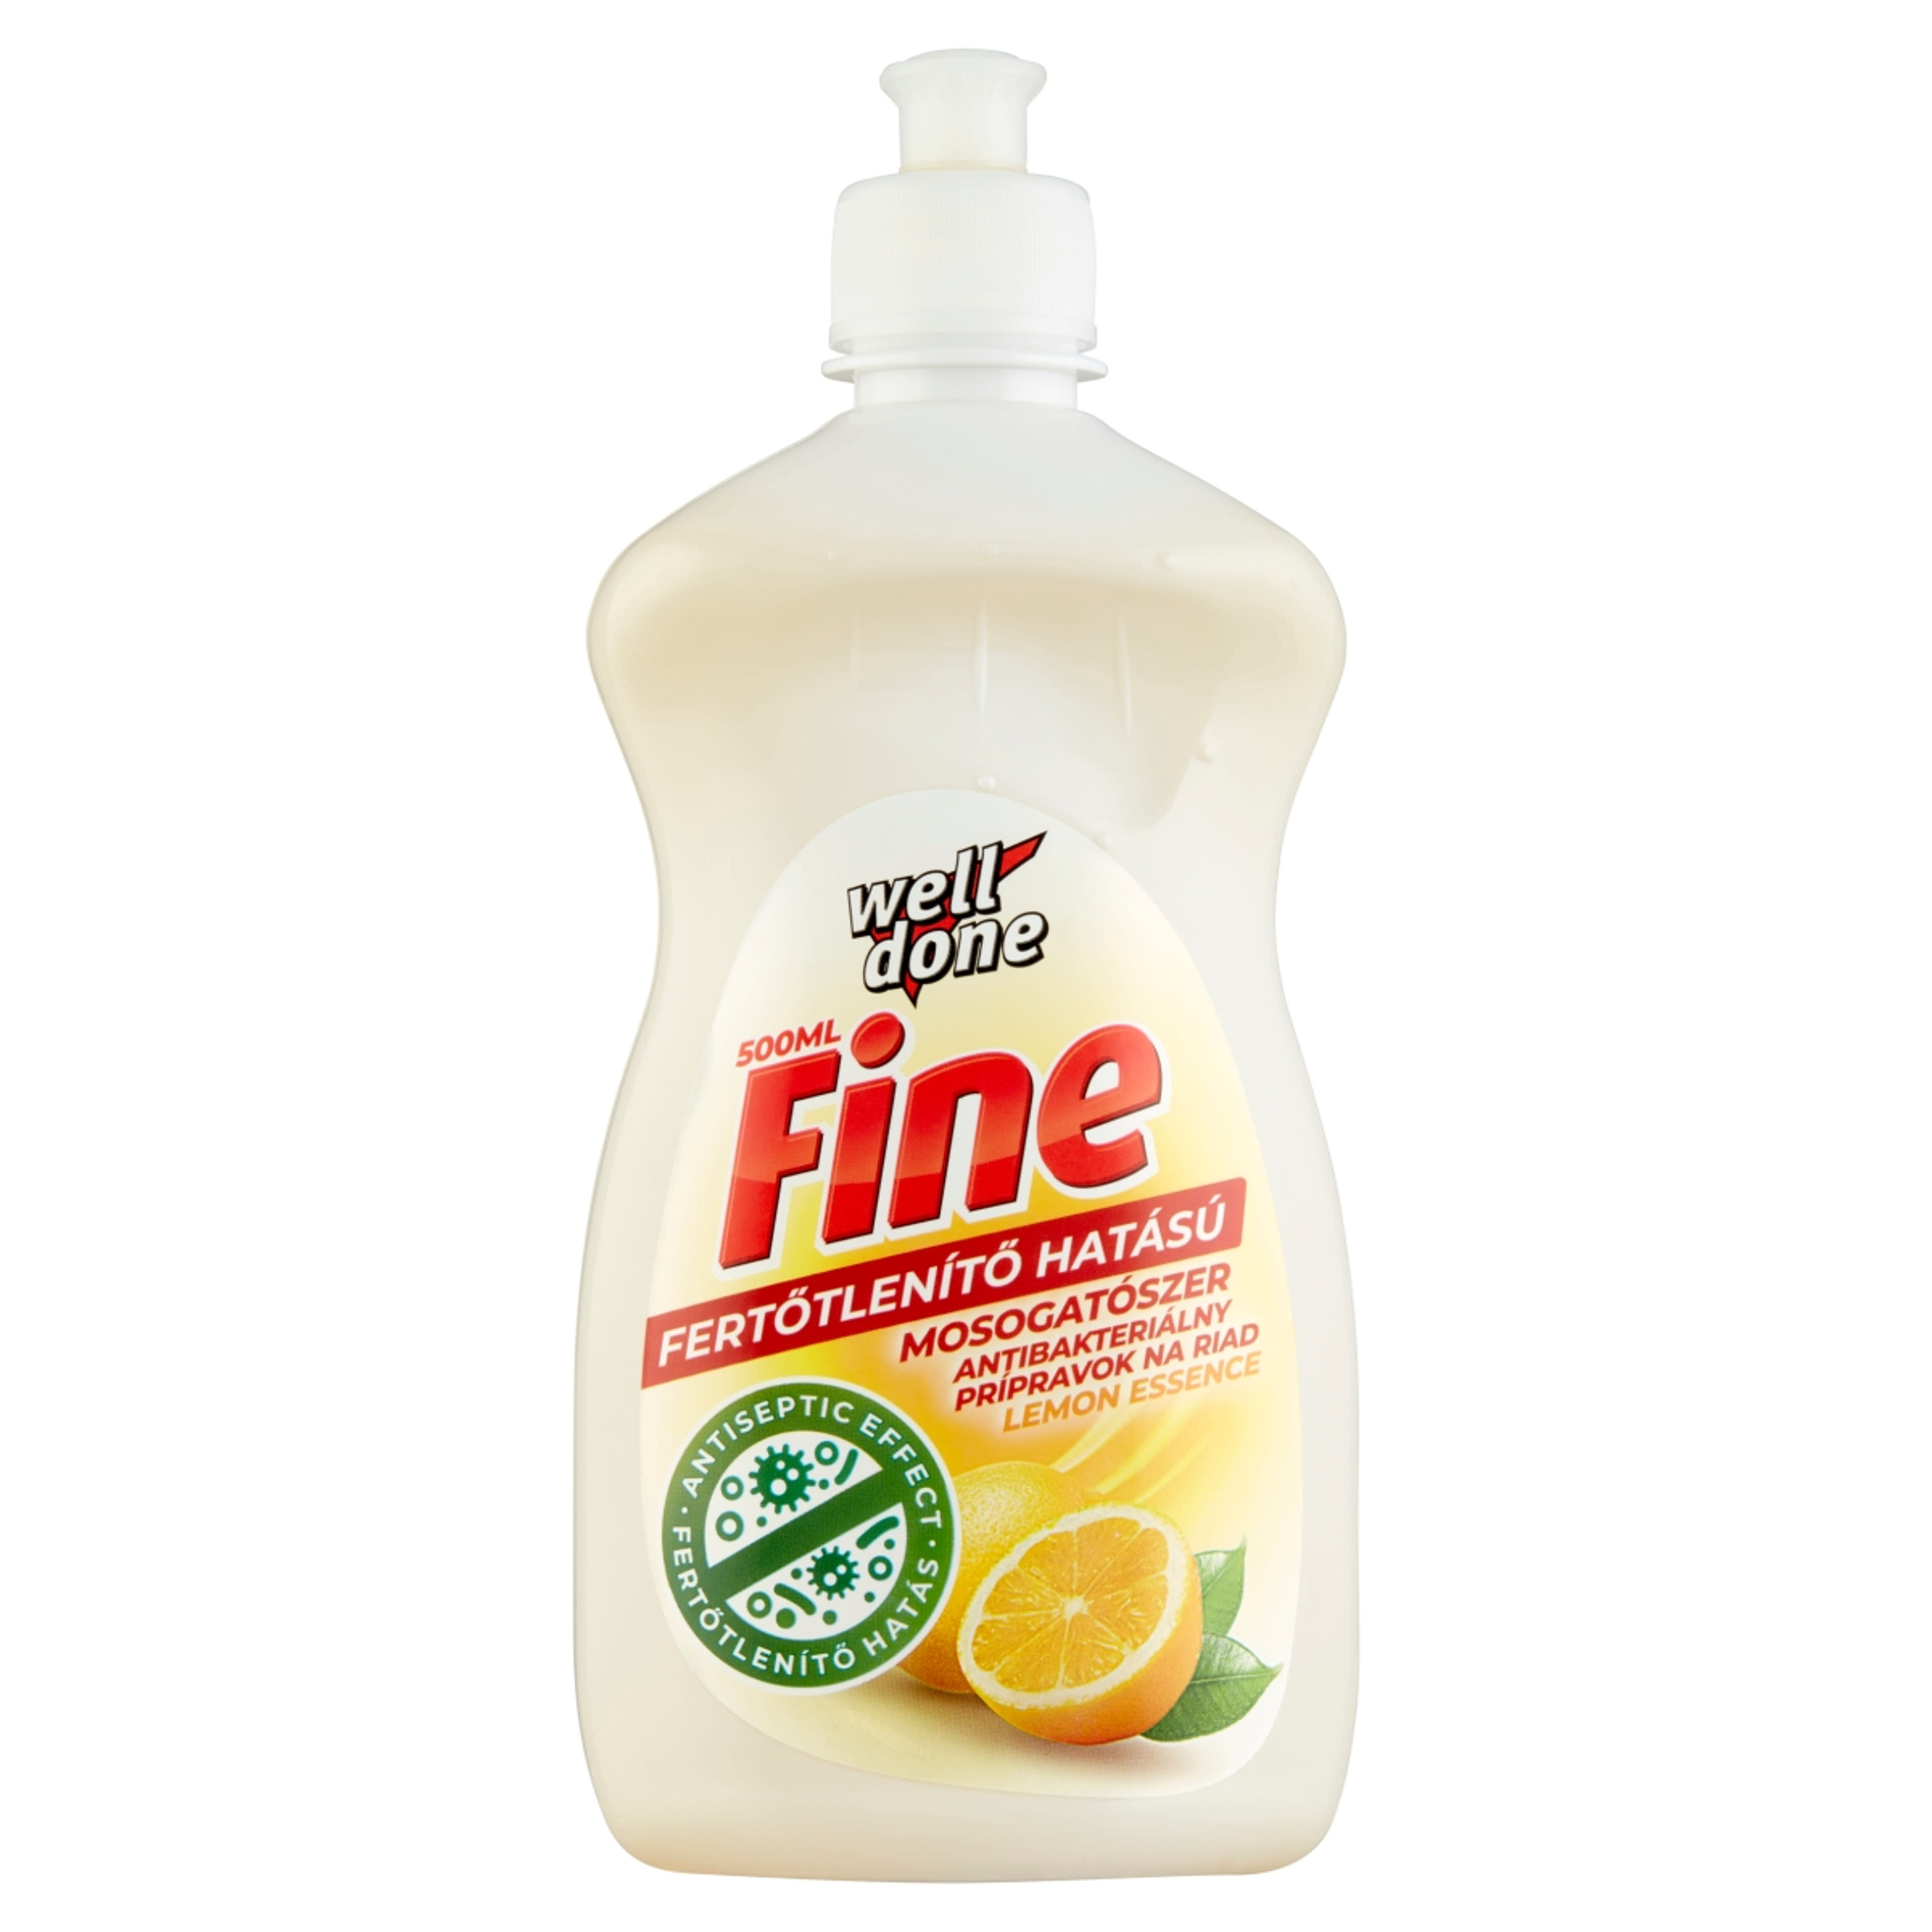 Well Done fine fertőtlenítő mosogatószer lemon essence - 500 ml